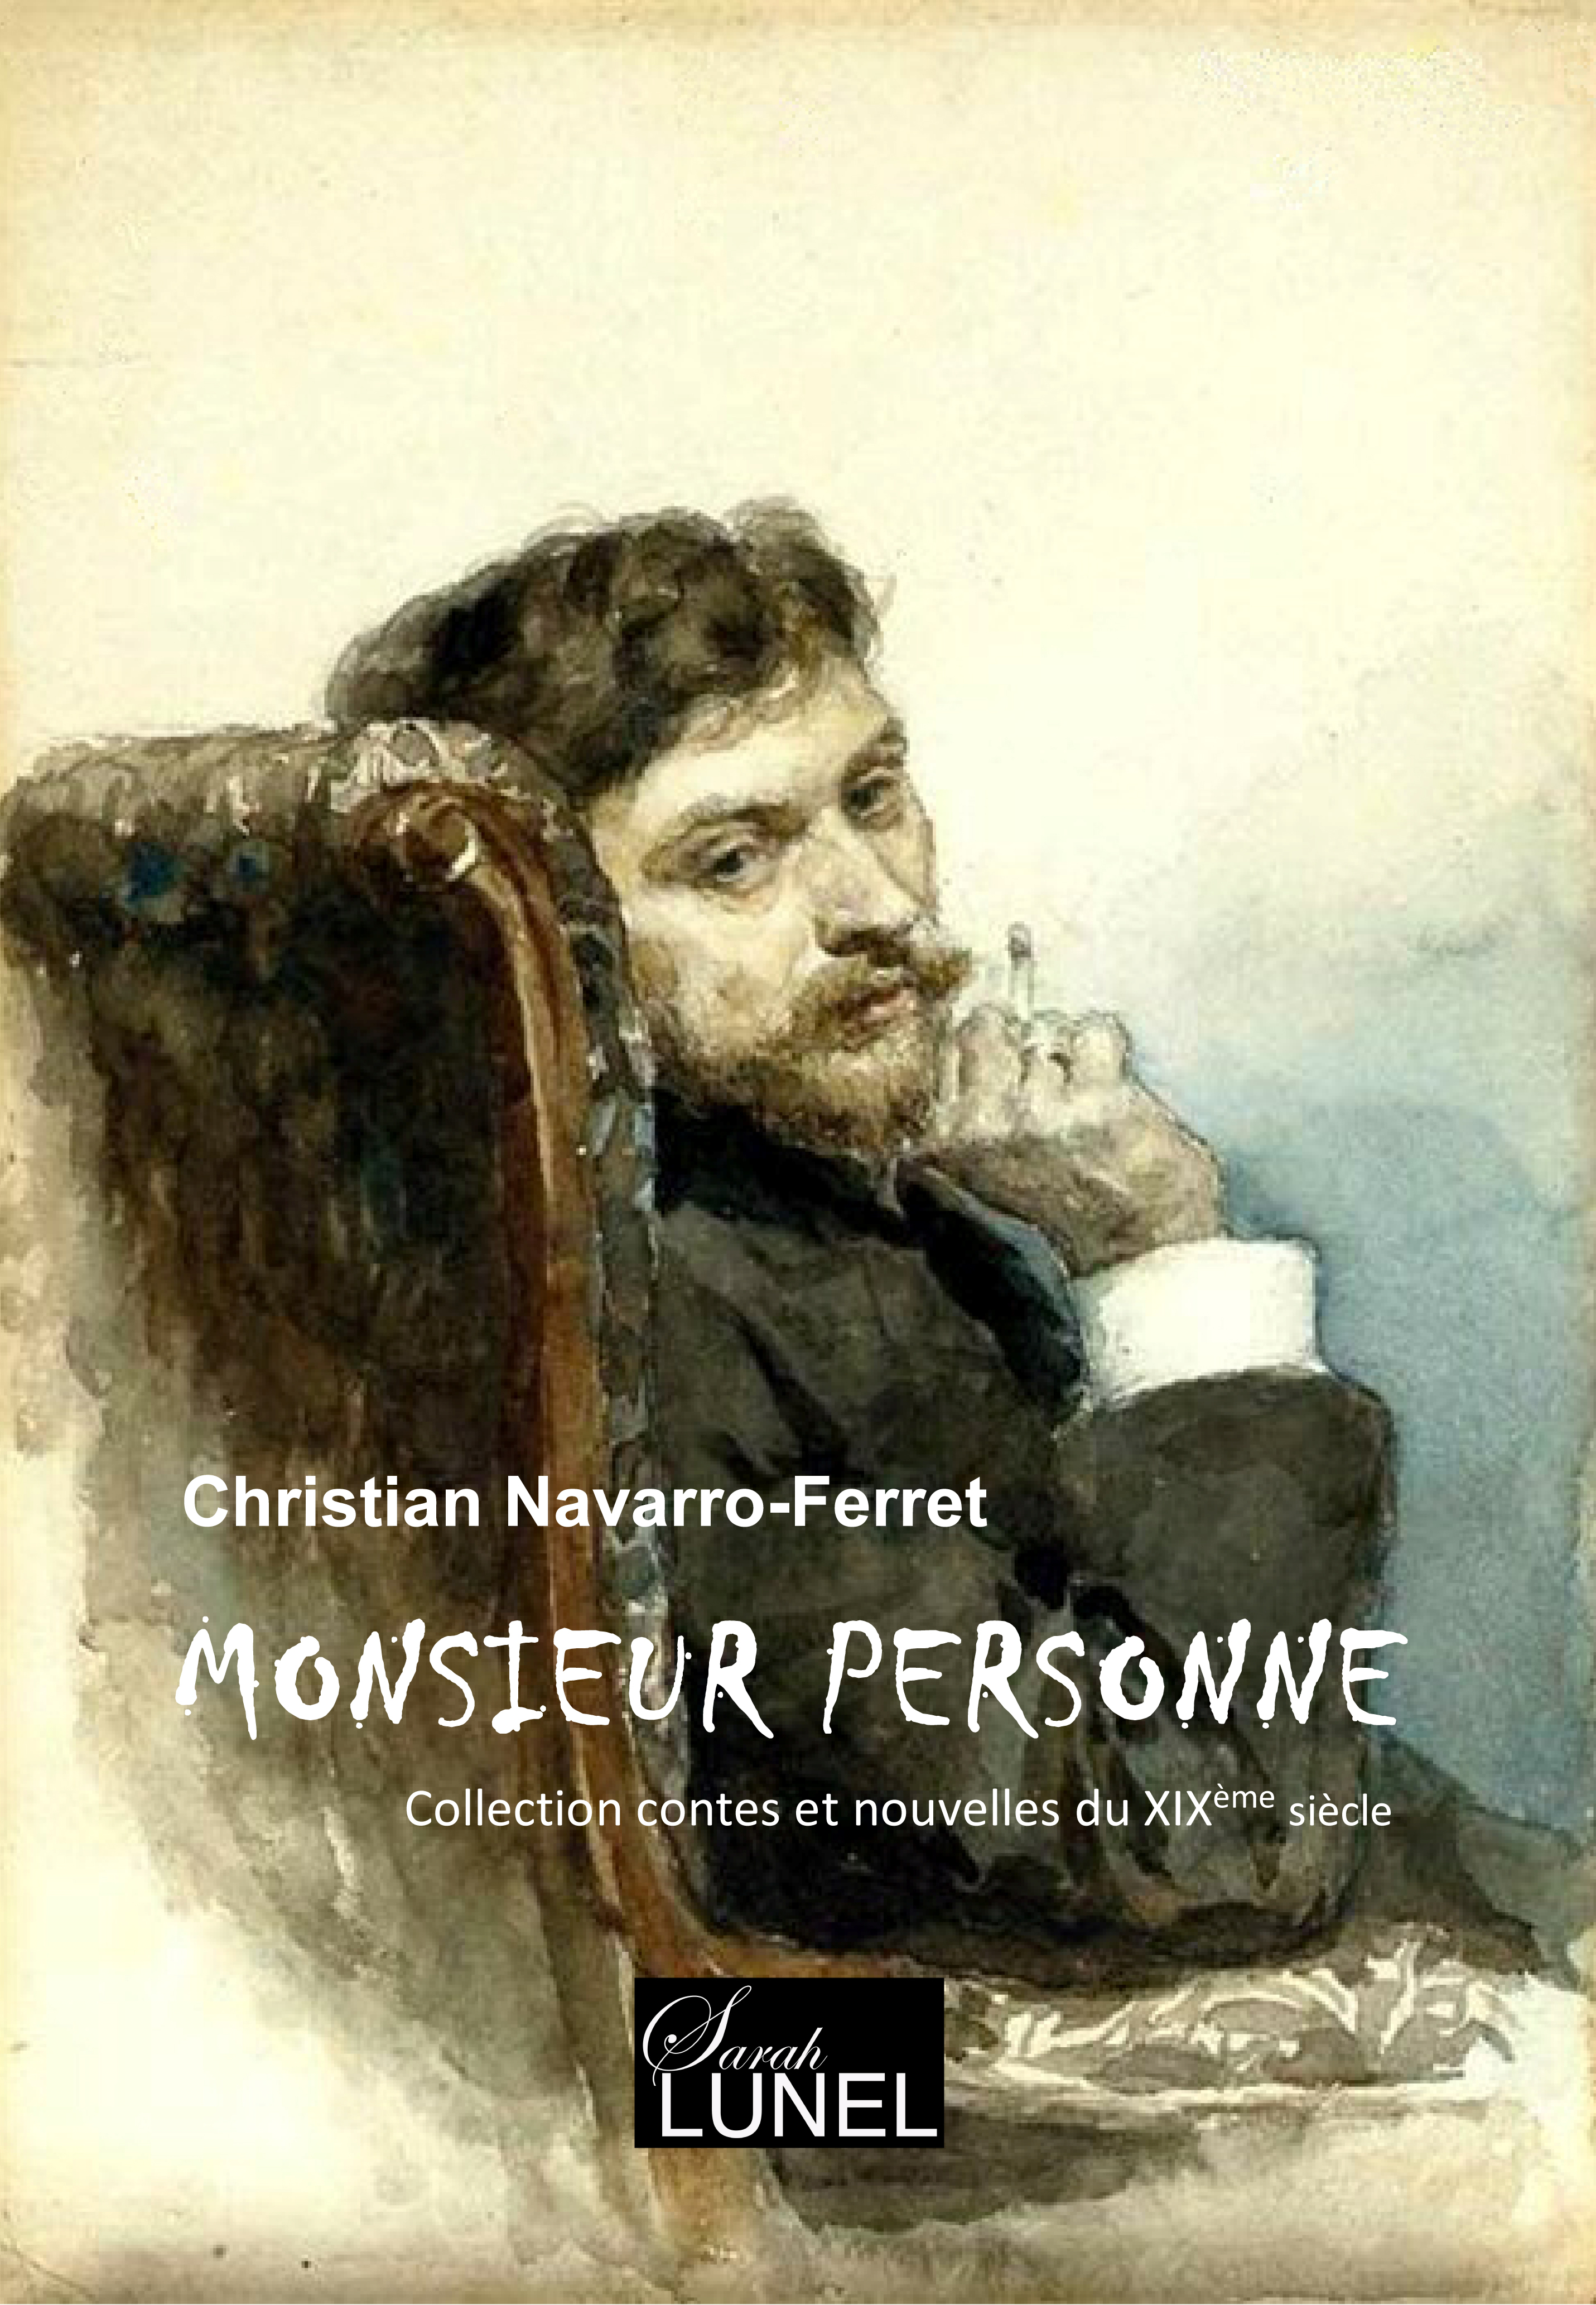 Monsieur_Personne_-_Couverture_officielle_-_face